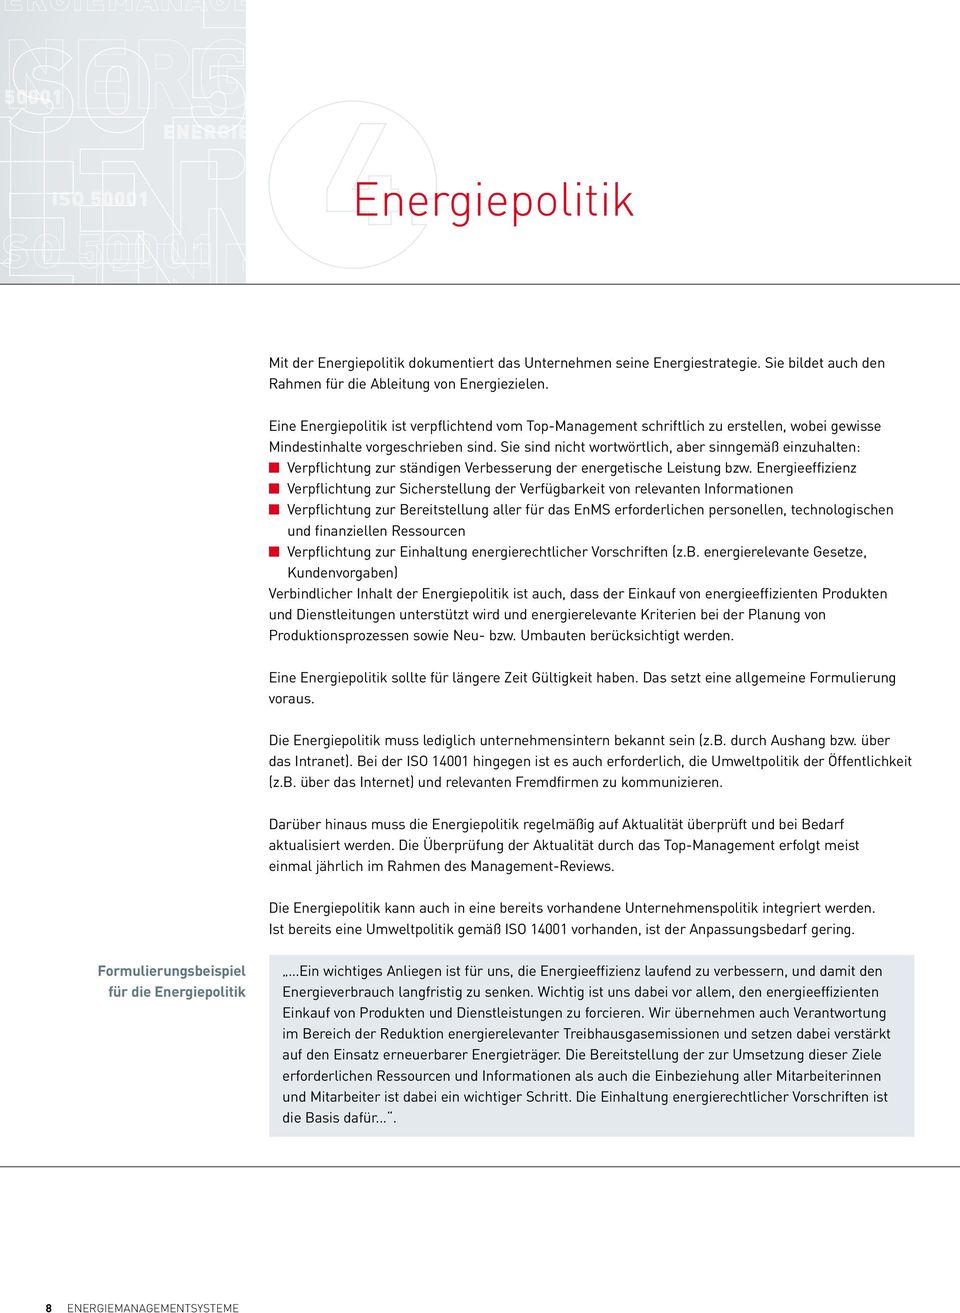 Eine Energiepolitik ist verpflichtend vom Top-Management schriftlich zu erstellen, wobei gewisse Mindestinhalte vorgeschrieben sind.